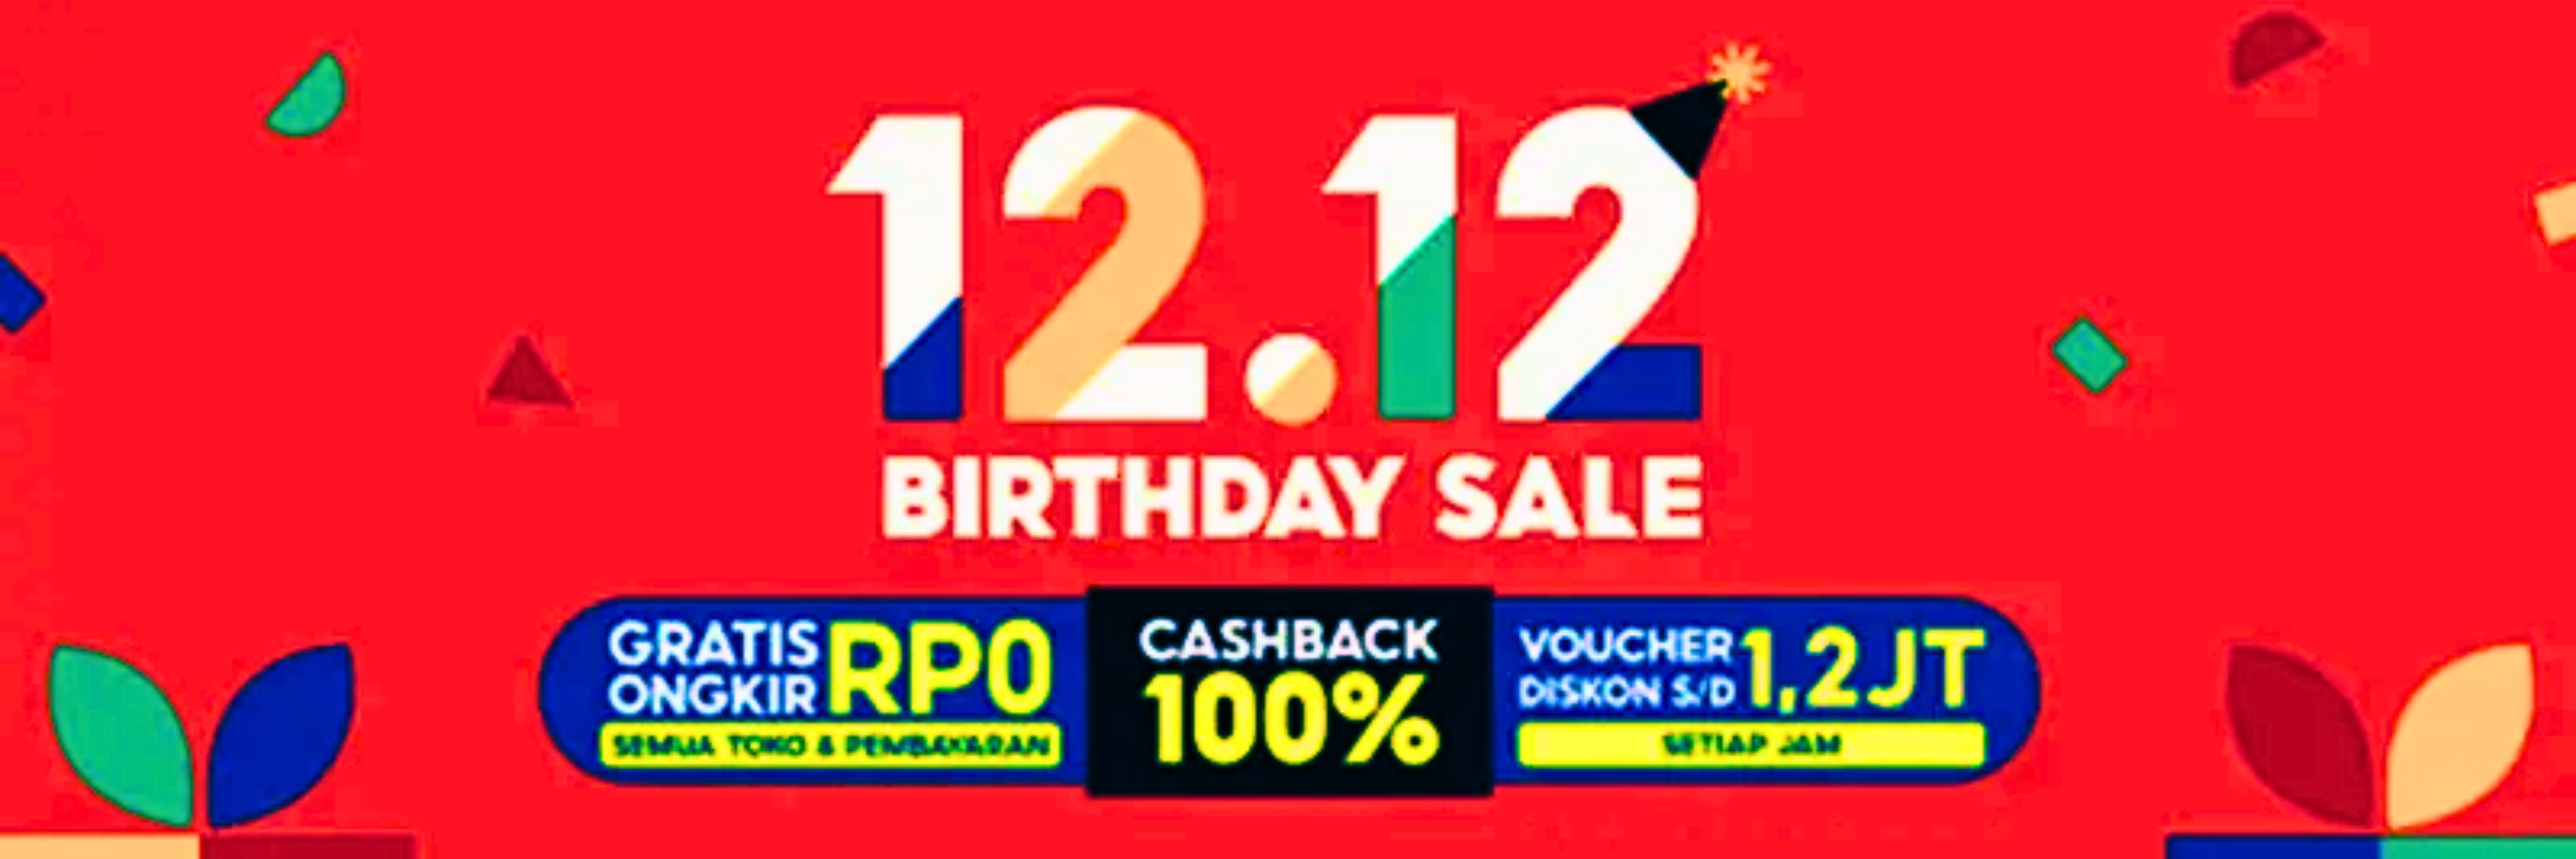 Menyambut Kemeriahan Kampanye 12.12 Birthday Sale Shopee: Mendukung Kemajuan UMKM dan Brand Lokal